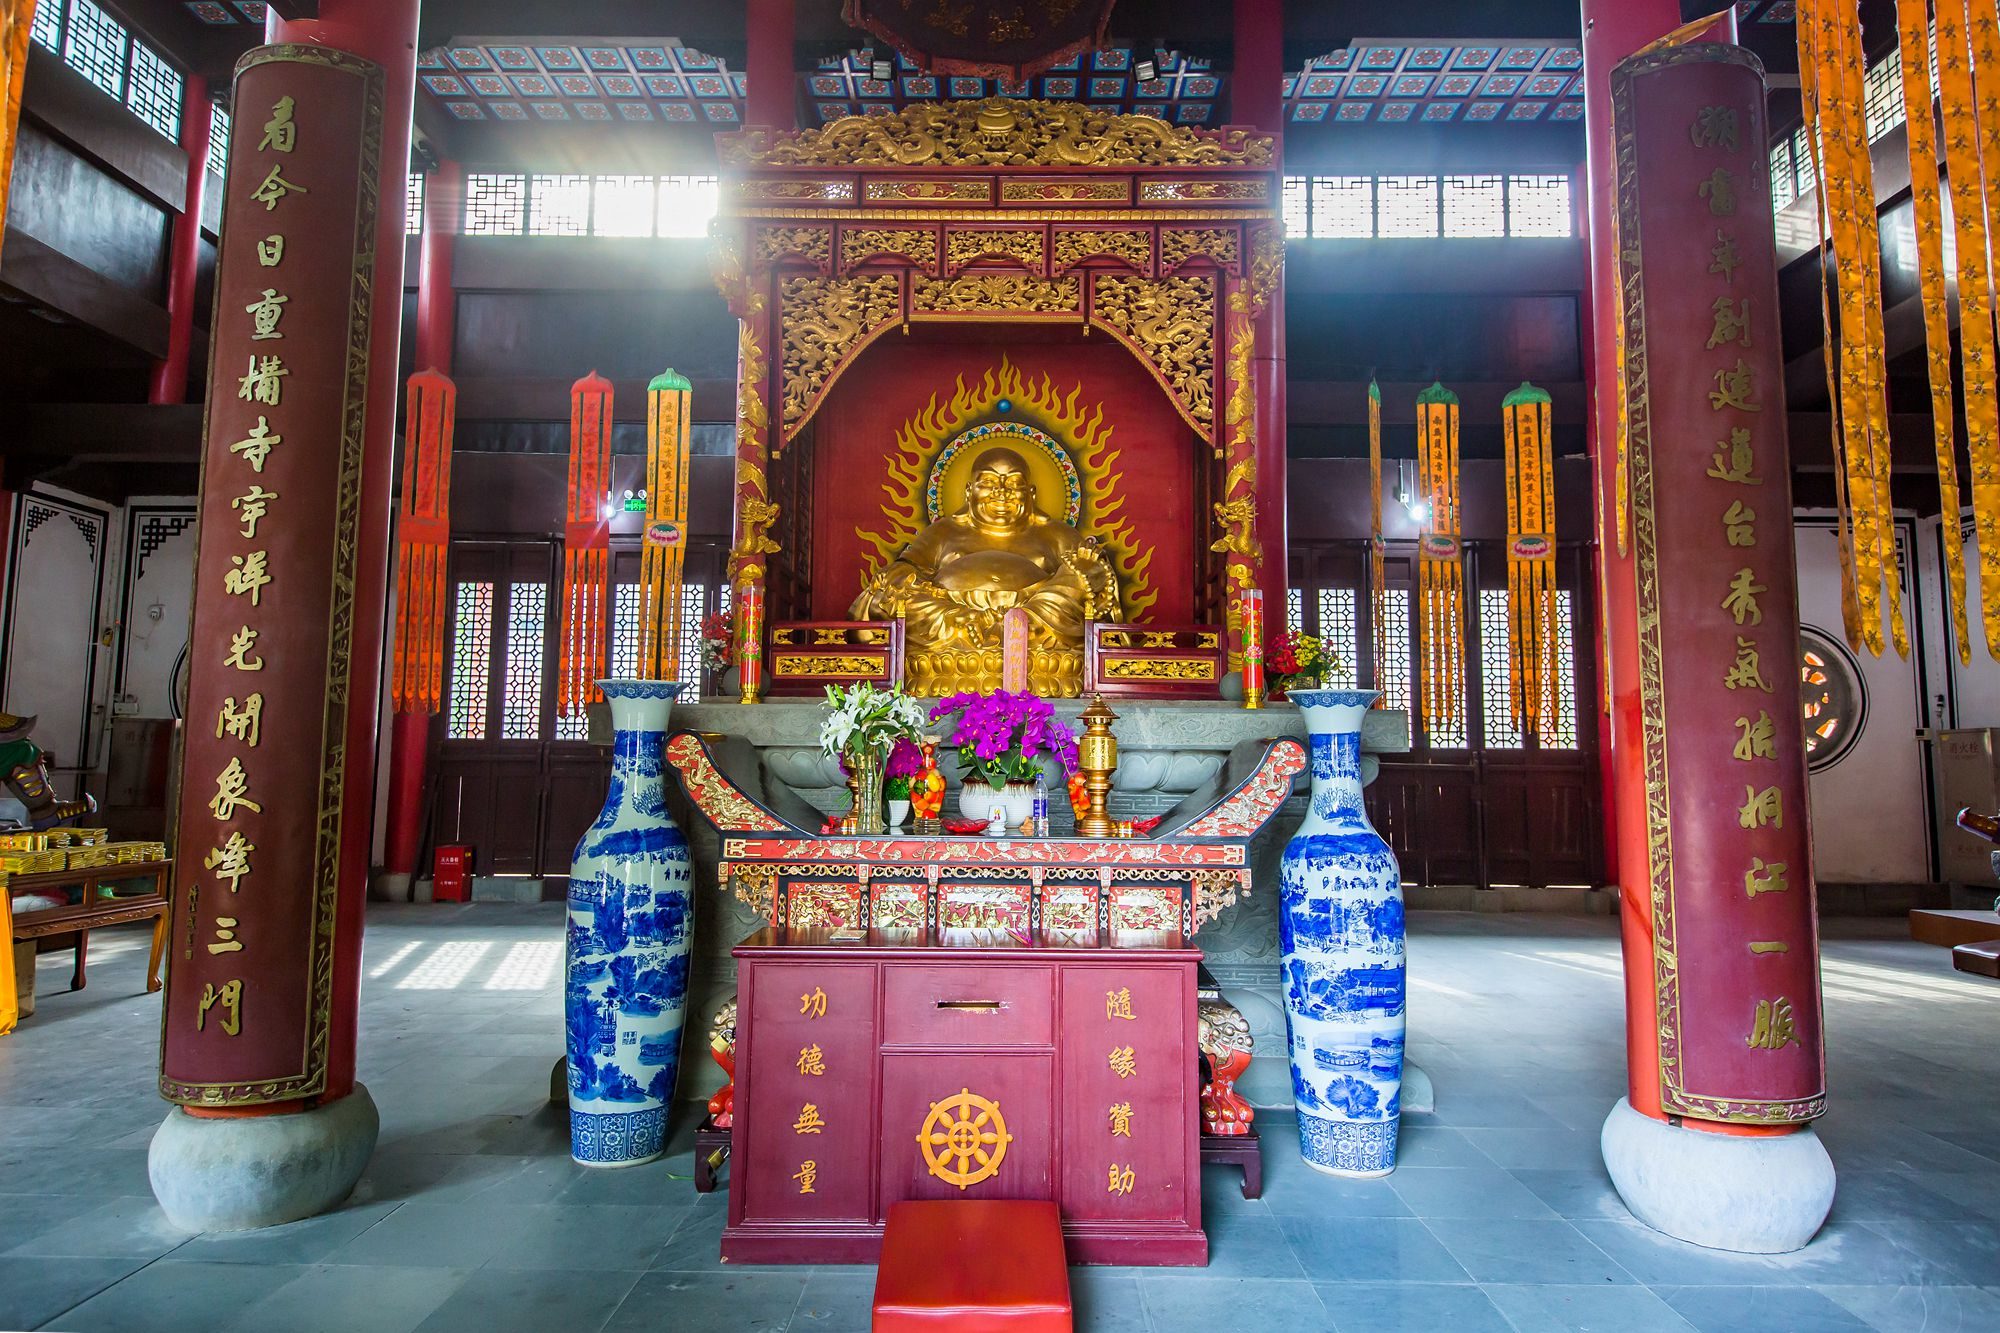 杭州桐庐圆通禅寺,环境优美,是我国建寺最早的观音道场之一